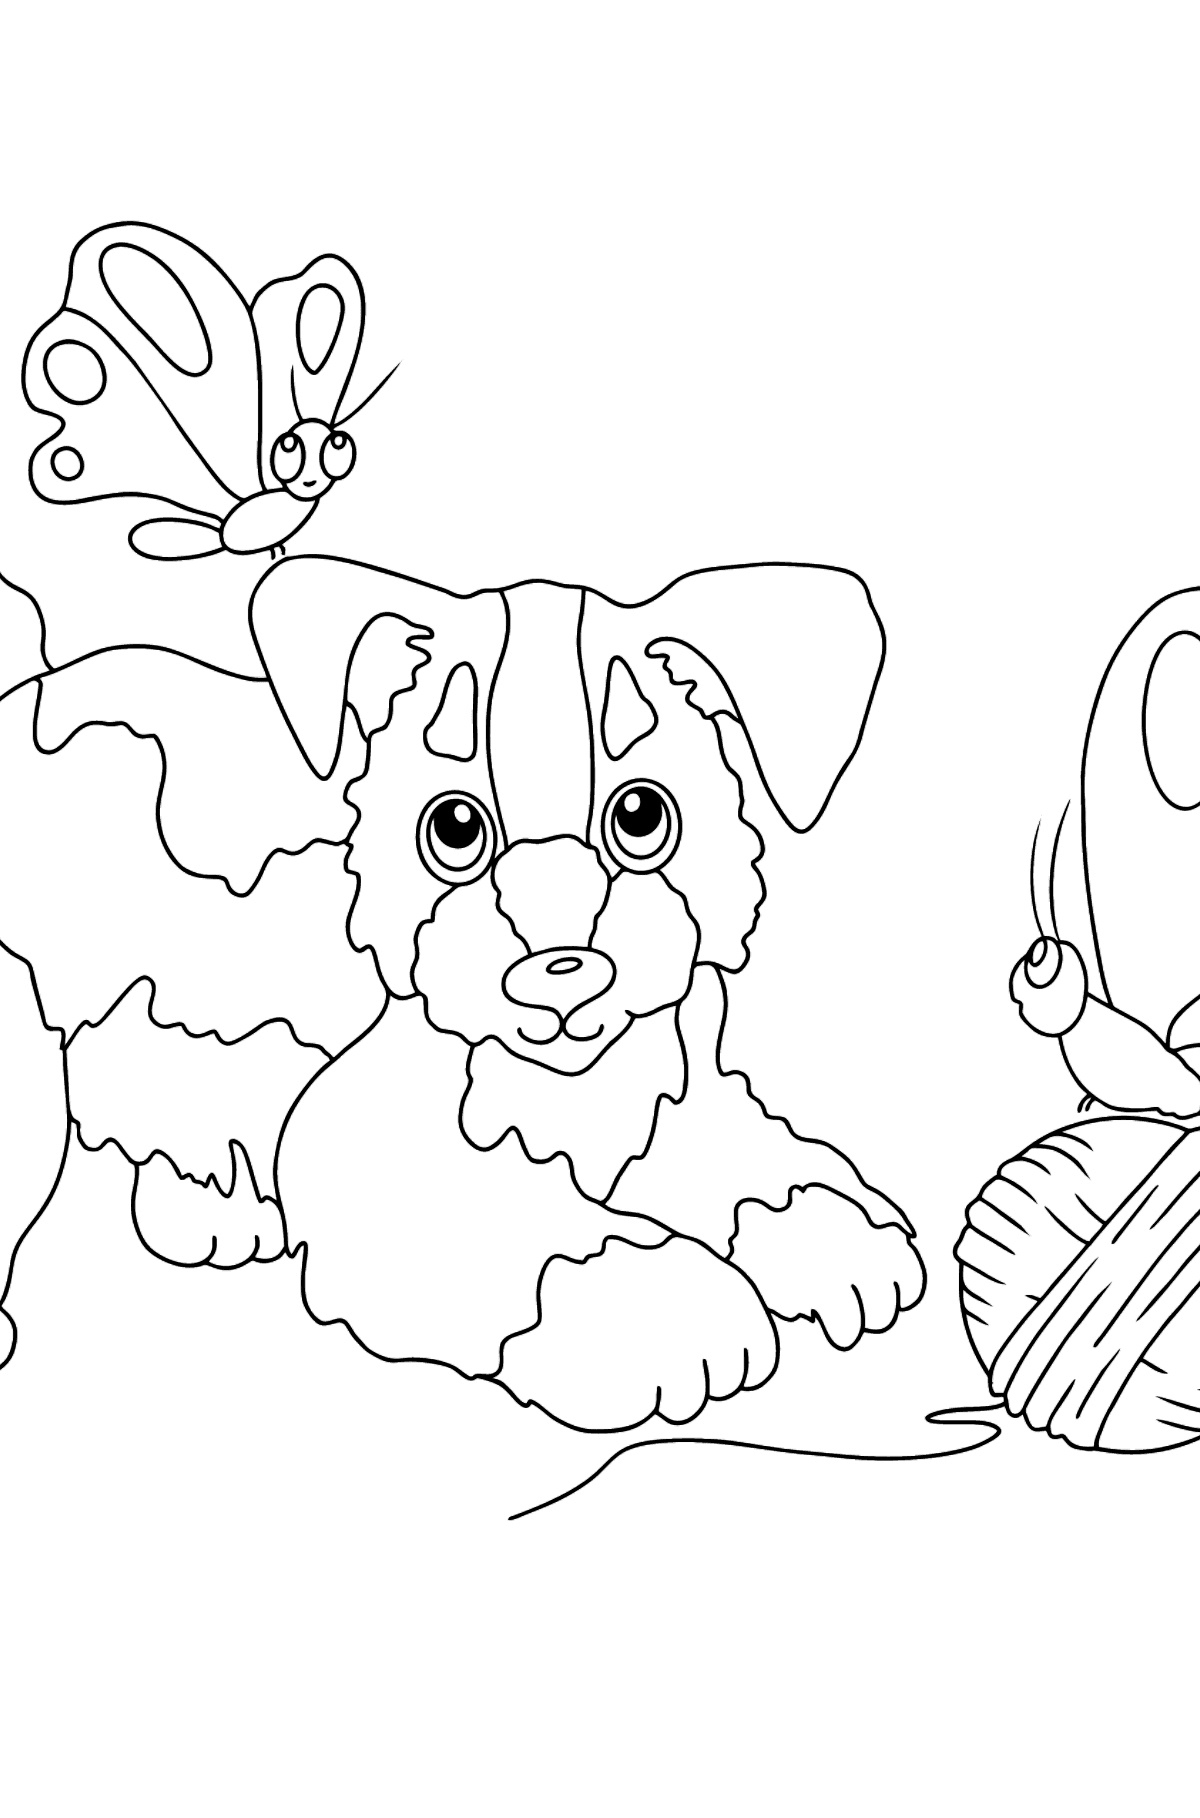 Boyama sayfası köpek oynuyor (zor) - Boyamalar çocuklar için